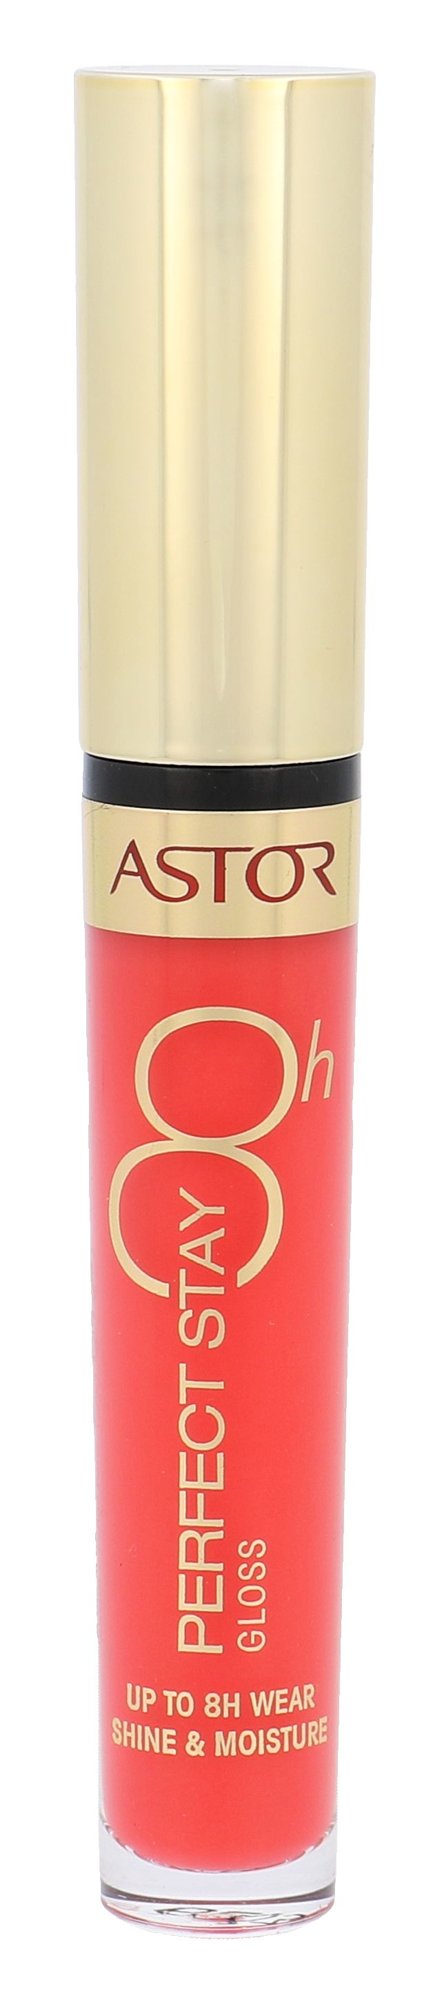 Astor Perfect Stay 8h lūpų blizgesys